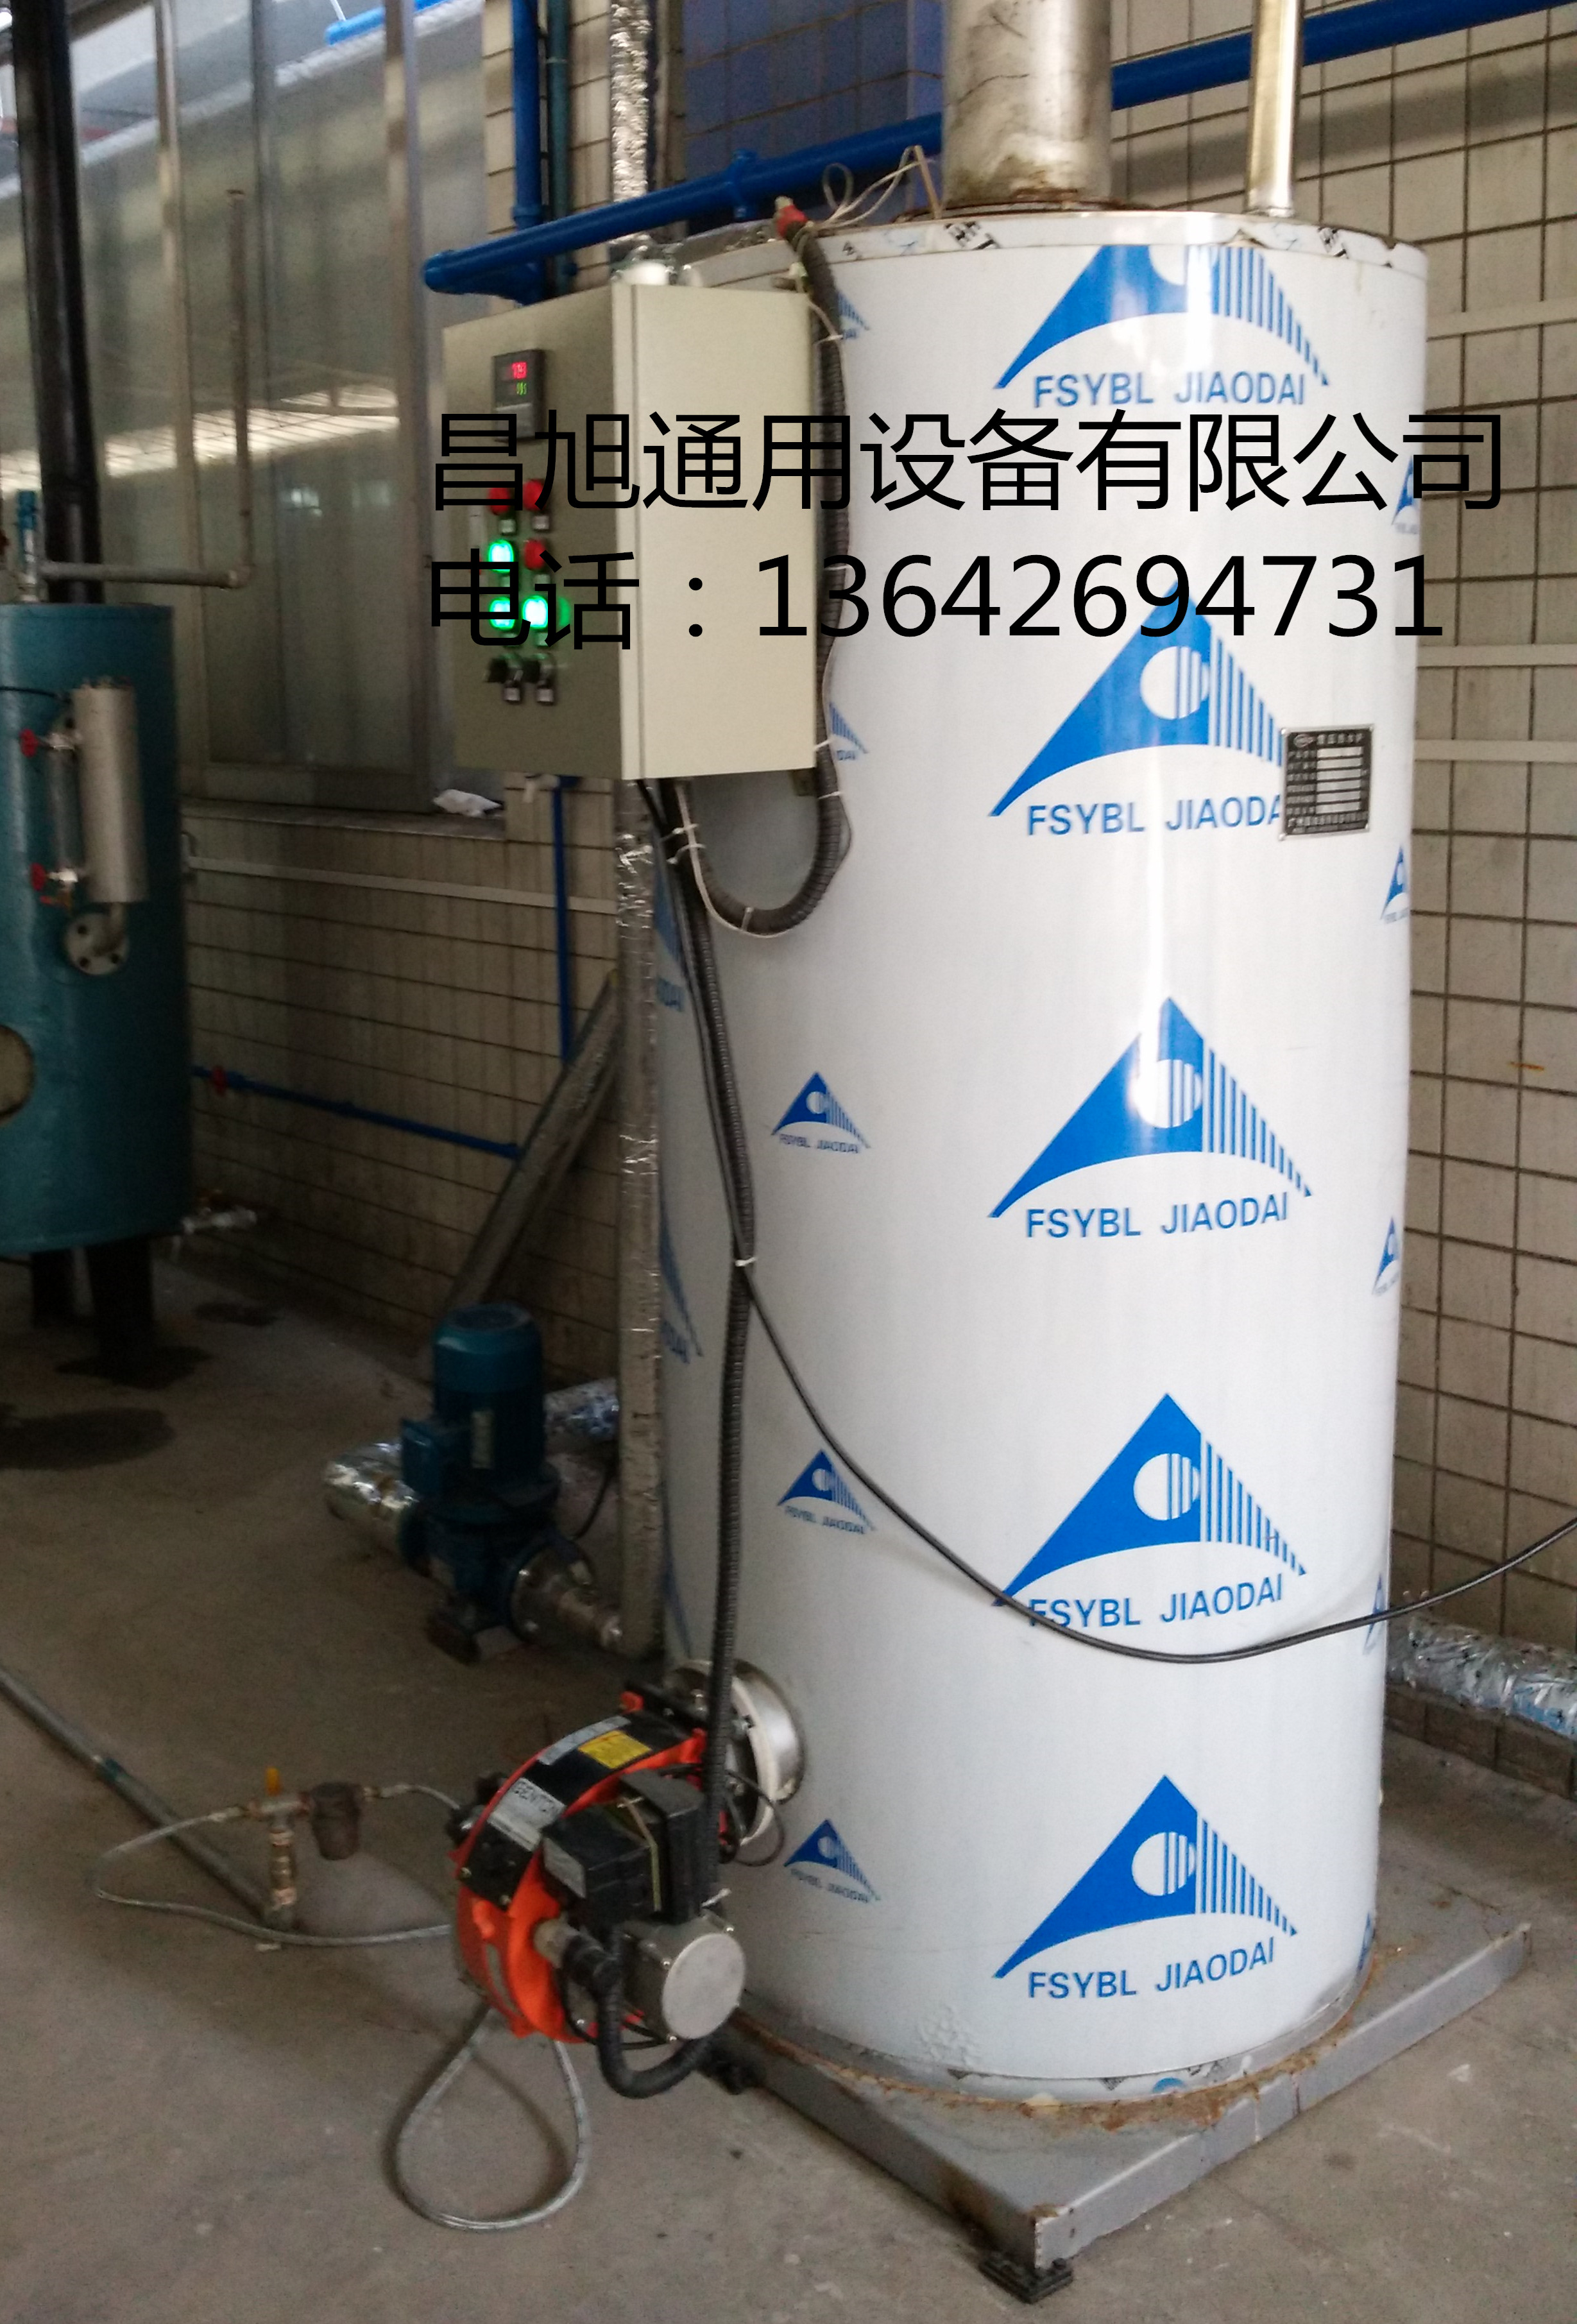 厂家直销供应用于生活热水采暖及工厂生产的常压燃气热水炉 燃气热水机热水器热水设备热交换设备